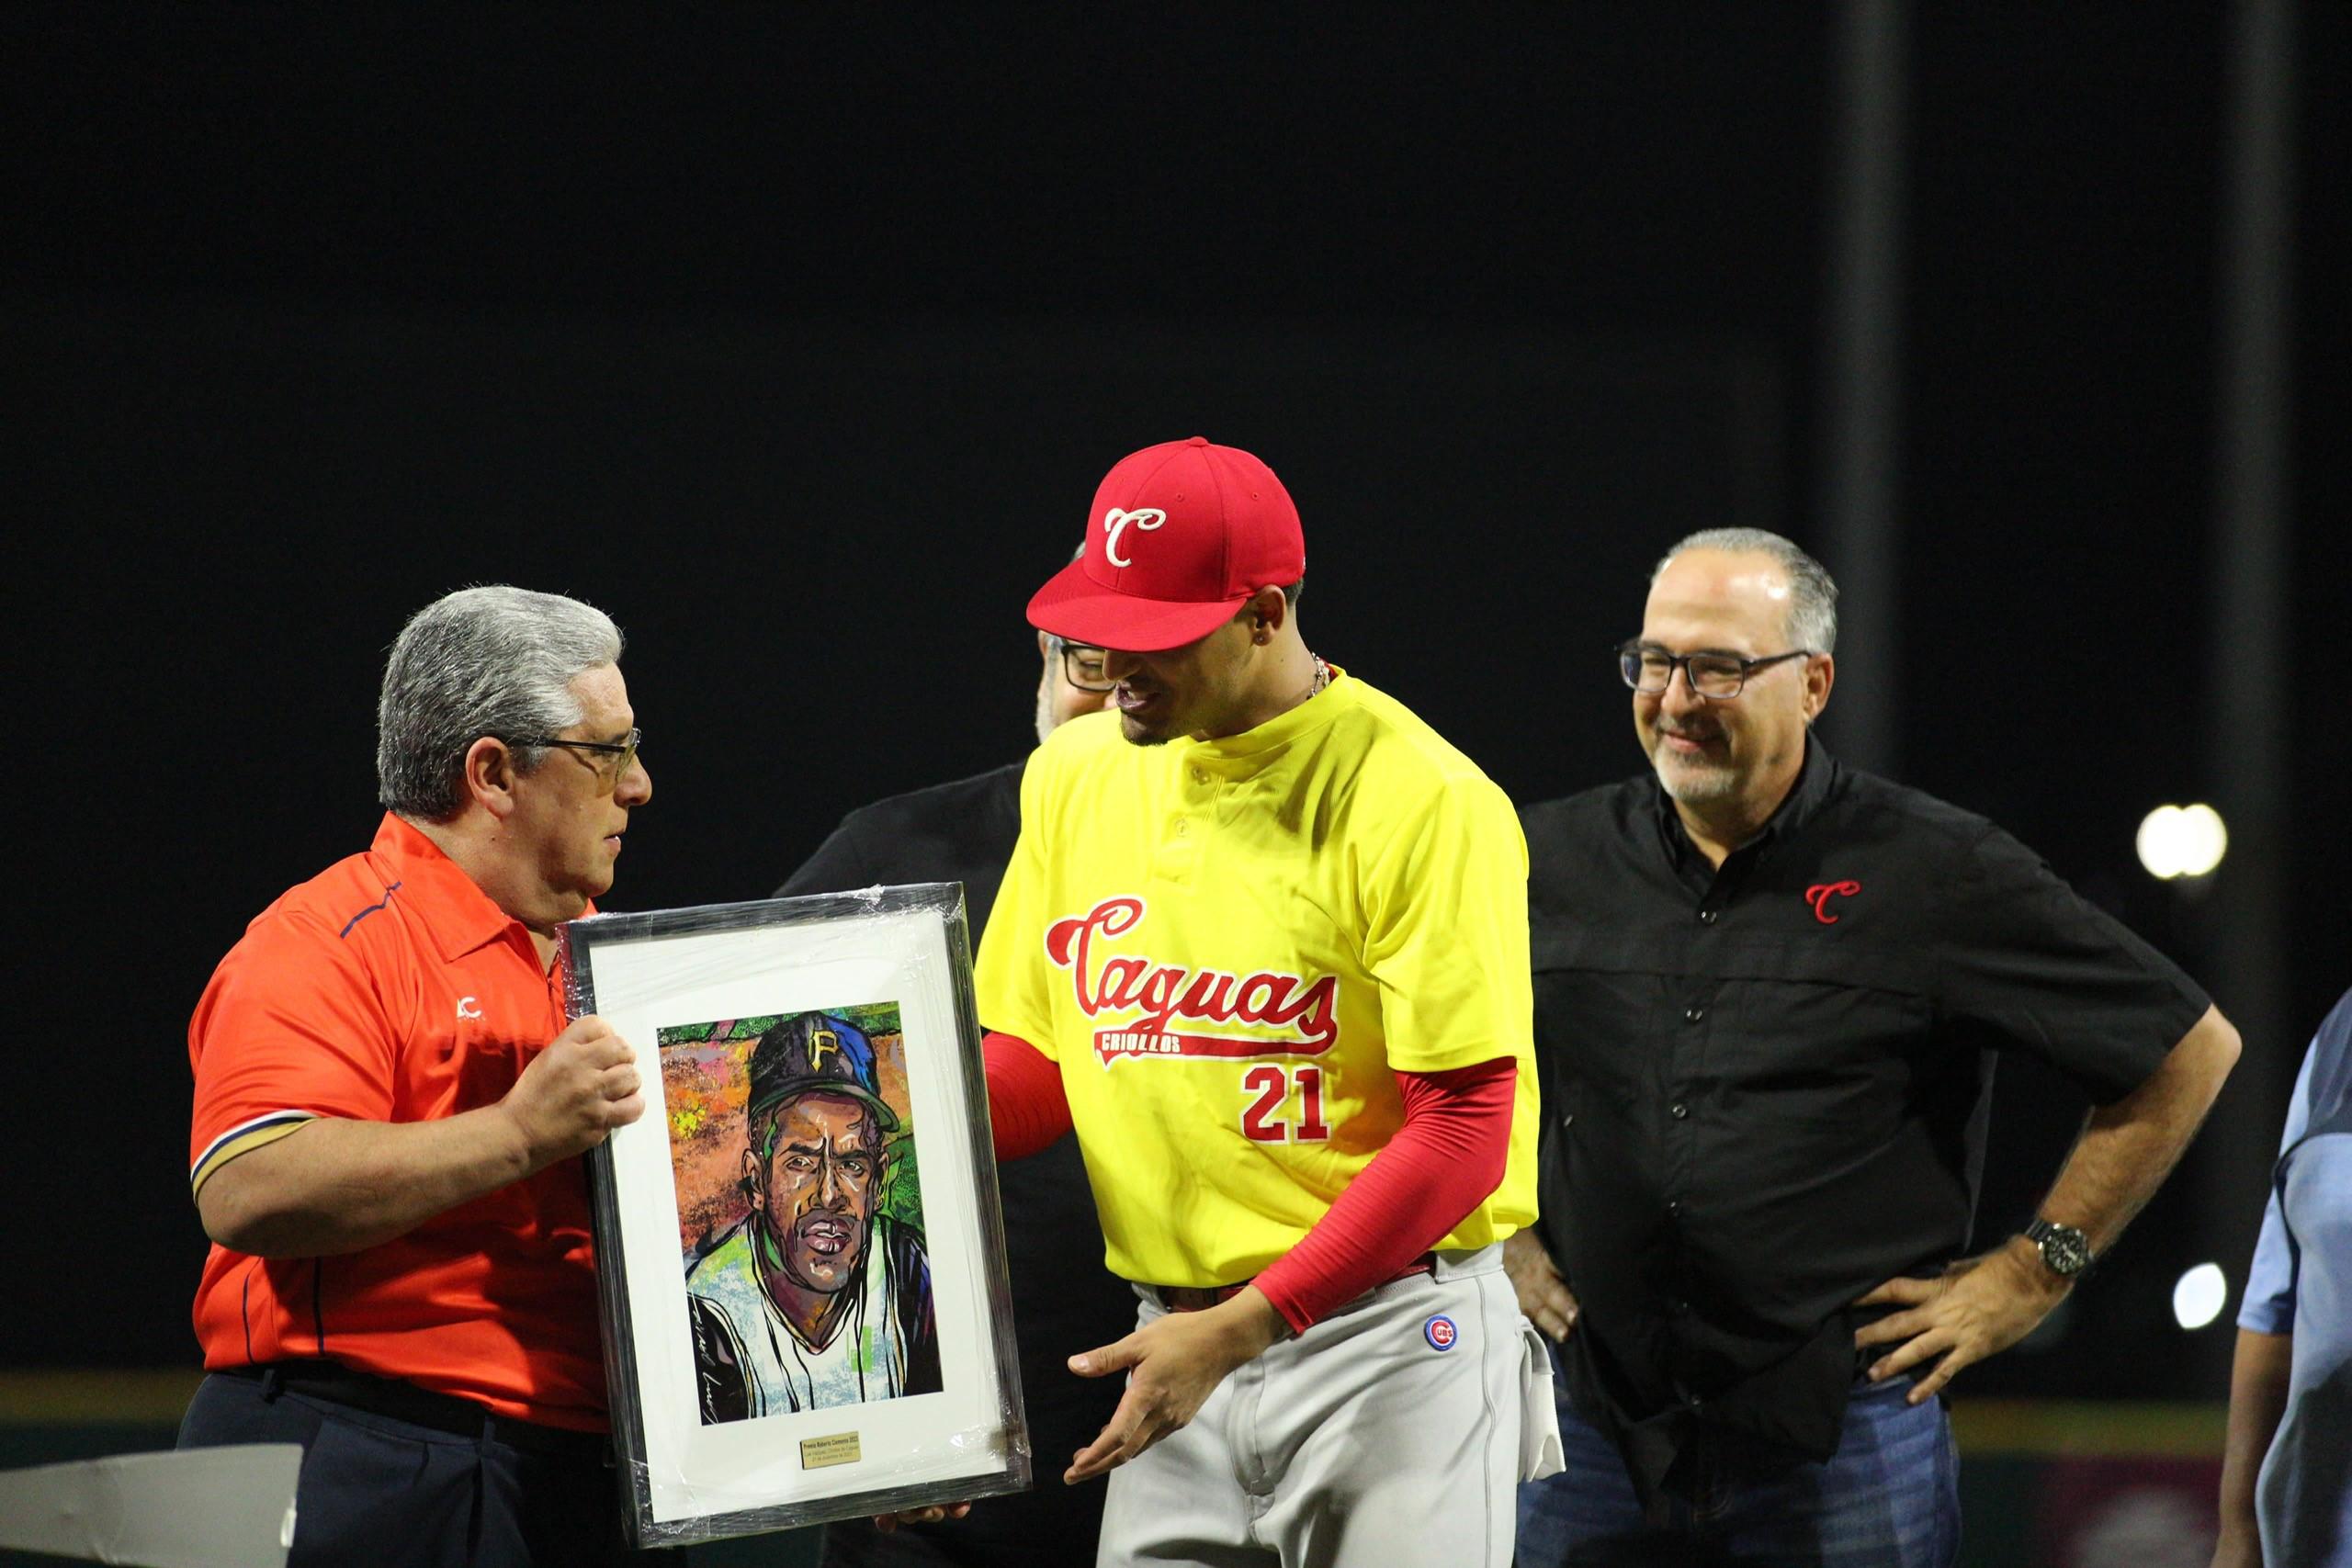 El pelotero de los Criollos Luis Vázquez recibe el premio Roberto Clemente de la mano del presidente de la LBPRC, Juan Flores Galarza.